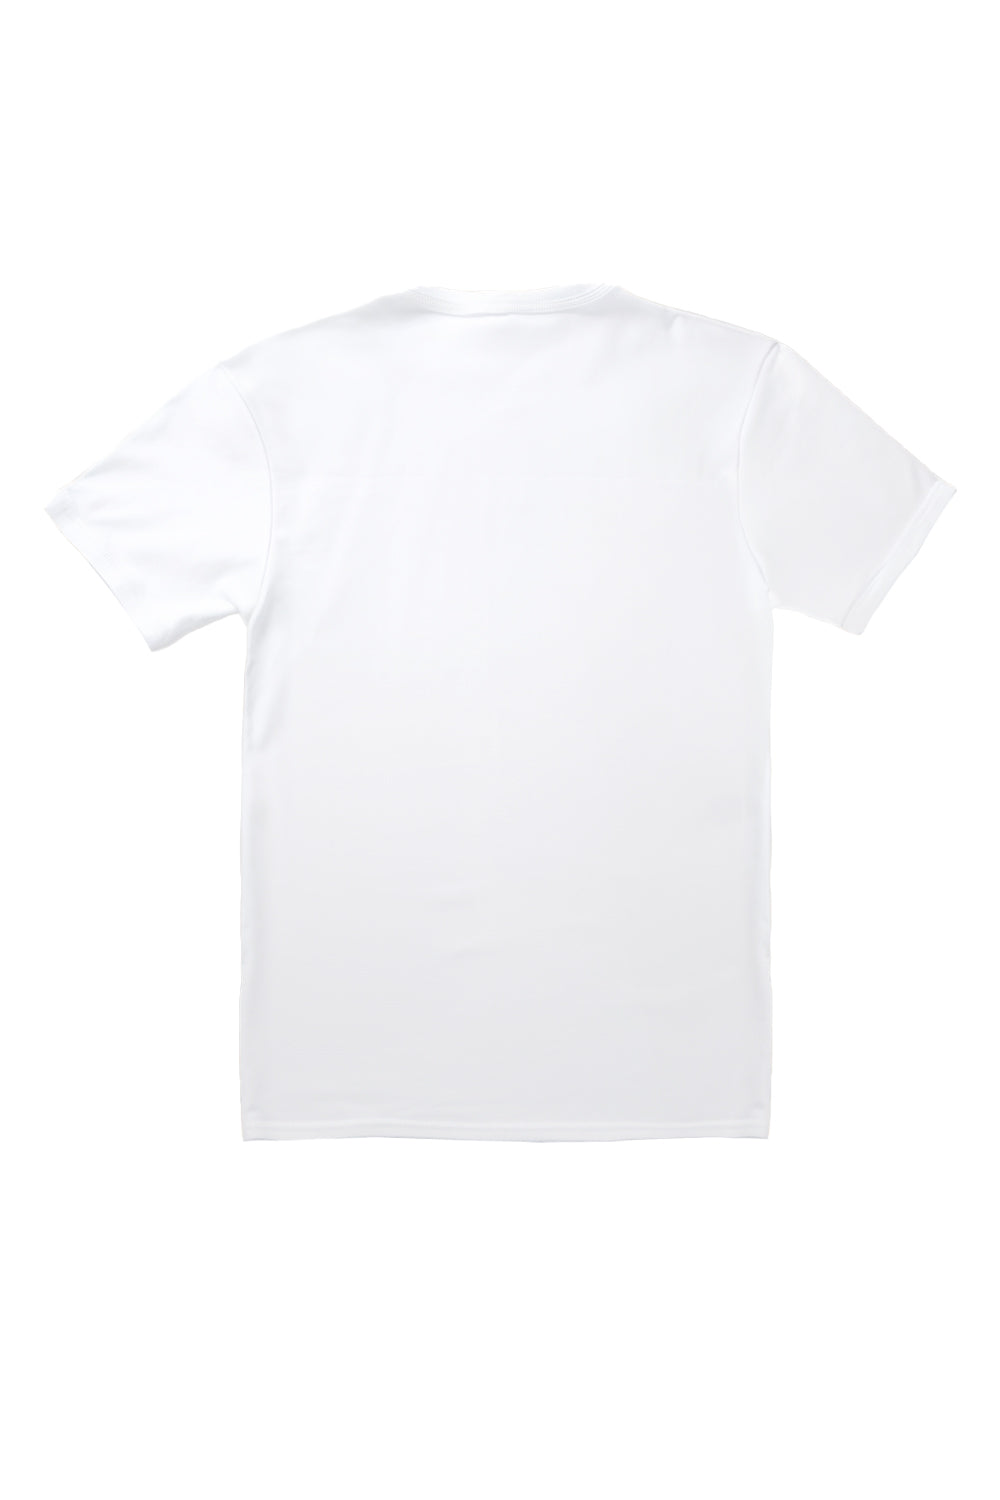 Las Vegas T-Shirt in White(Custom Packs)